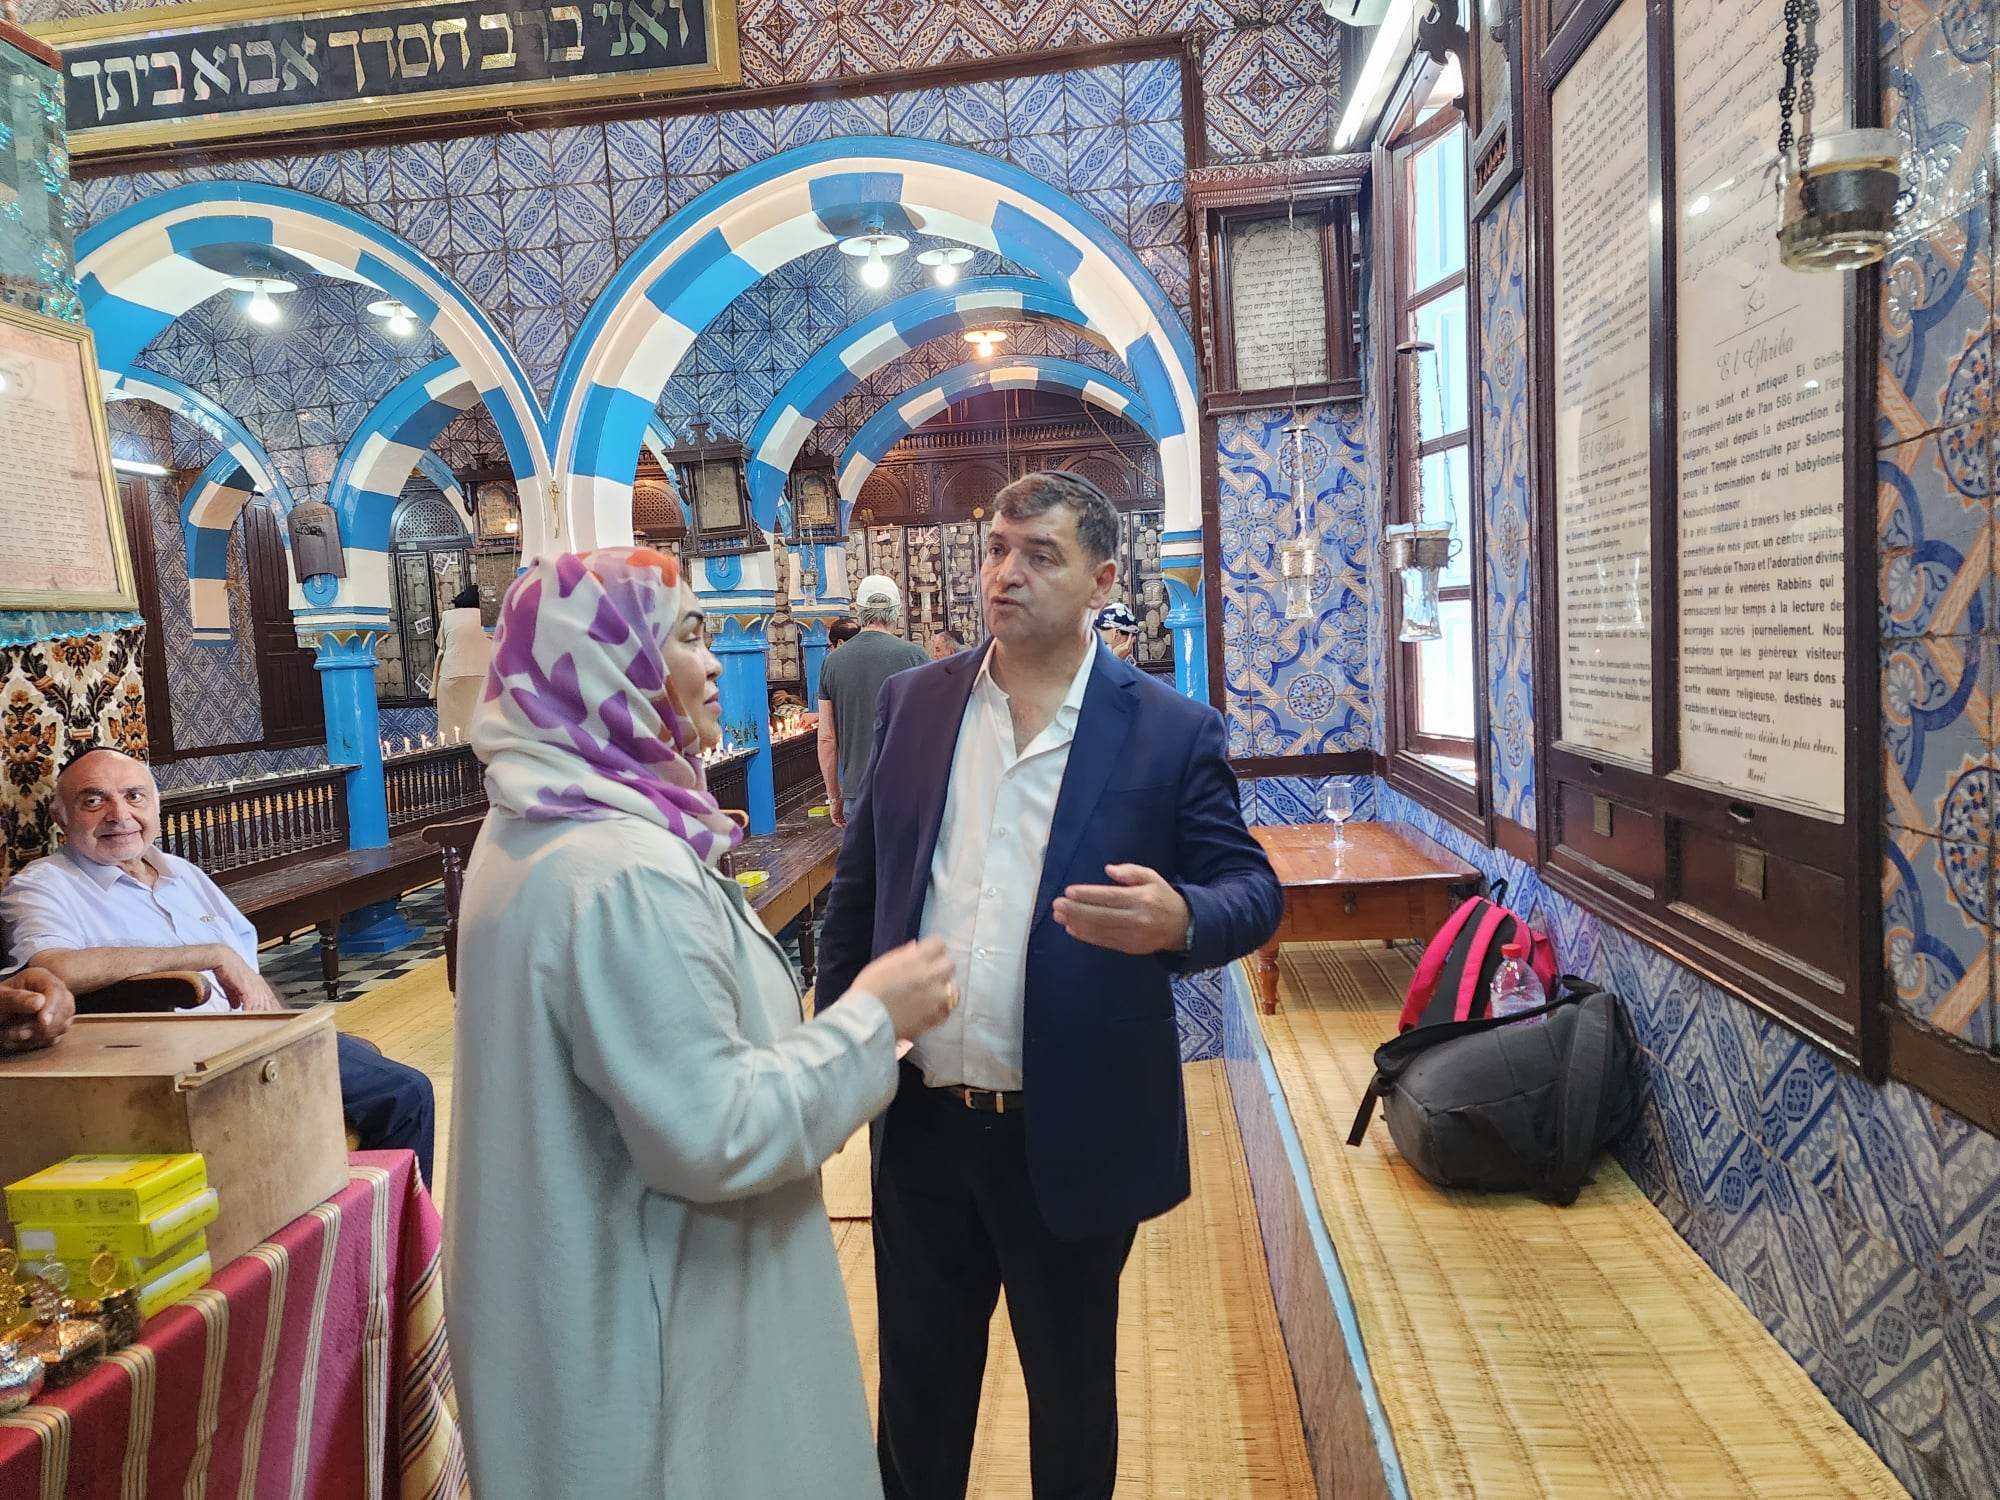  سفيرة دولة الامارات خلال زيارتها لمعبد الغريبة لـ"الصباح نيوز": تونس ارض التسامح وجربة نموذجا